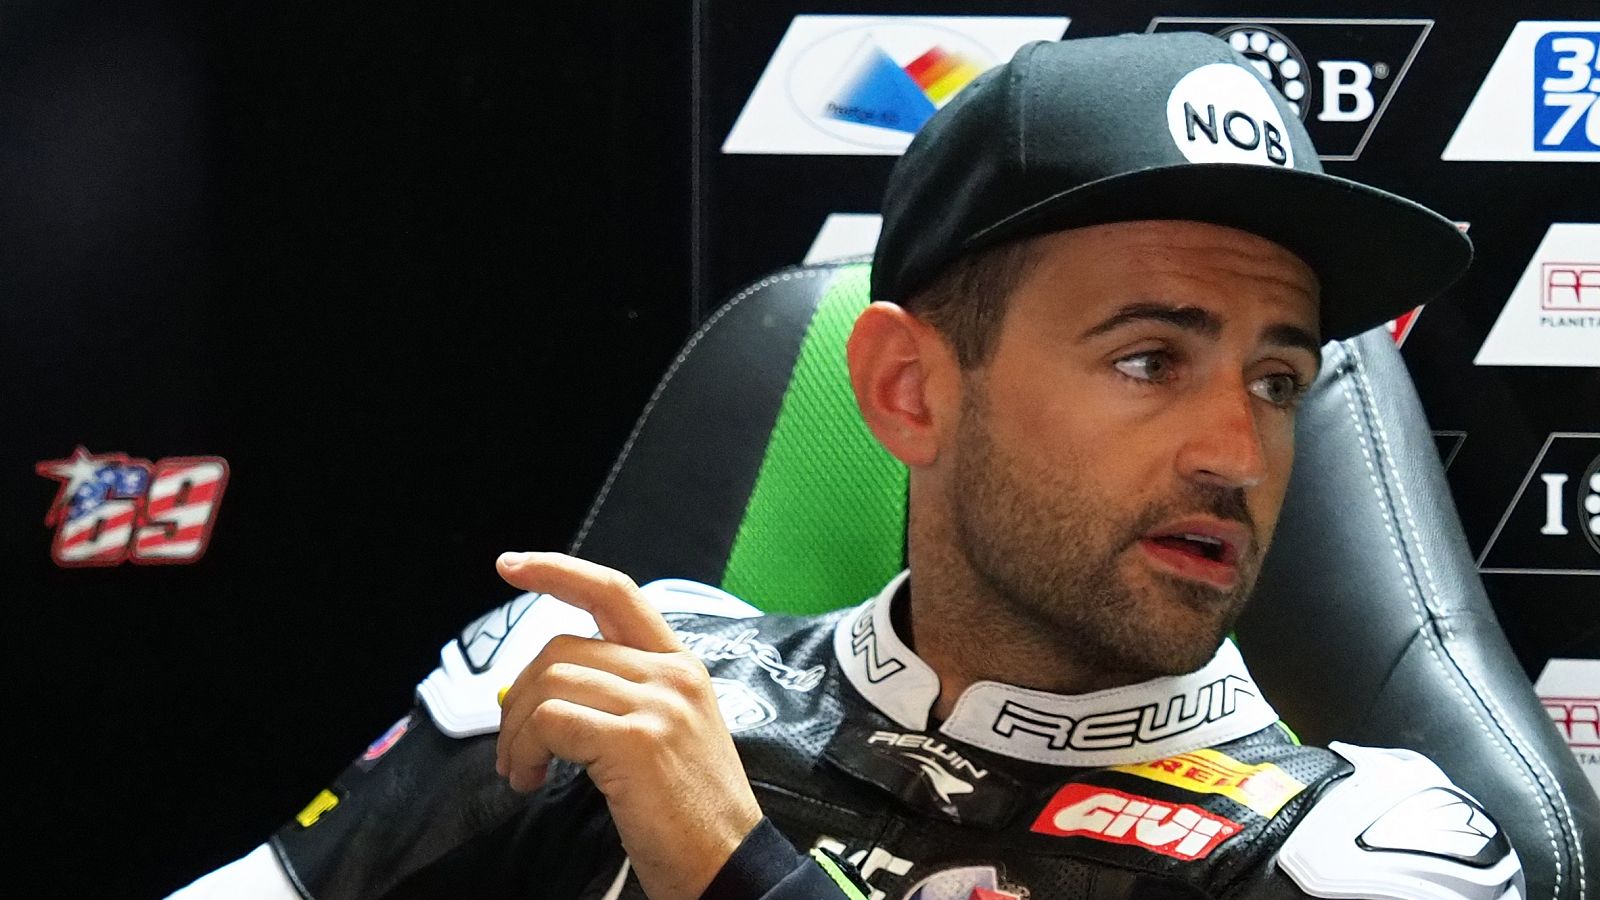 Héctor Barberá, sin equipo en Supersport, correrá en Superbike en sustitución de Leandro Mercado